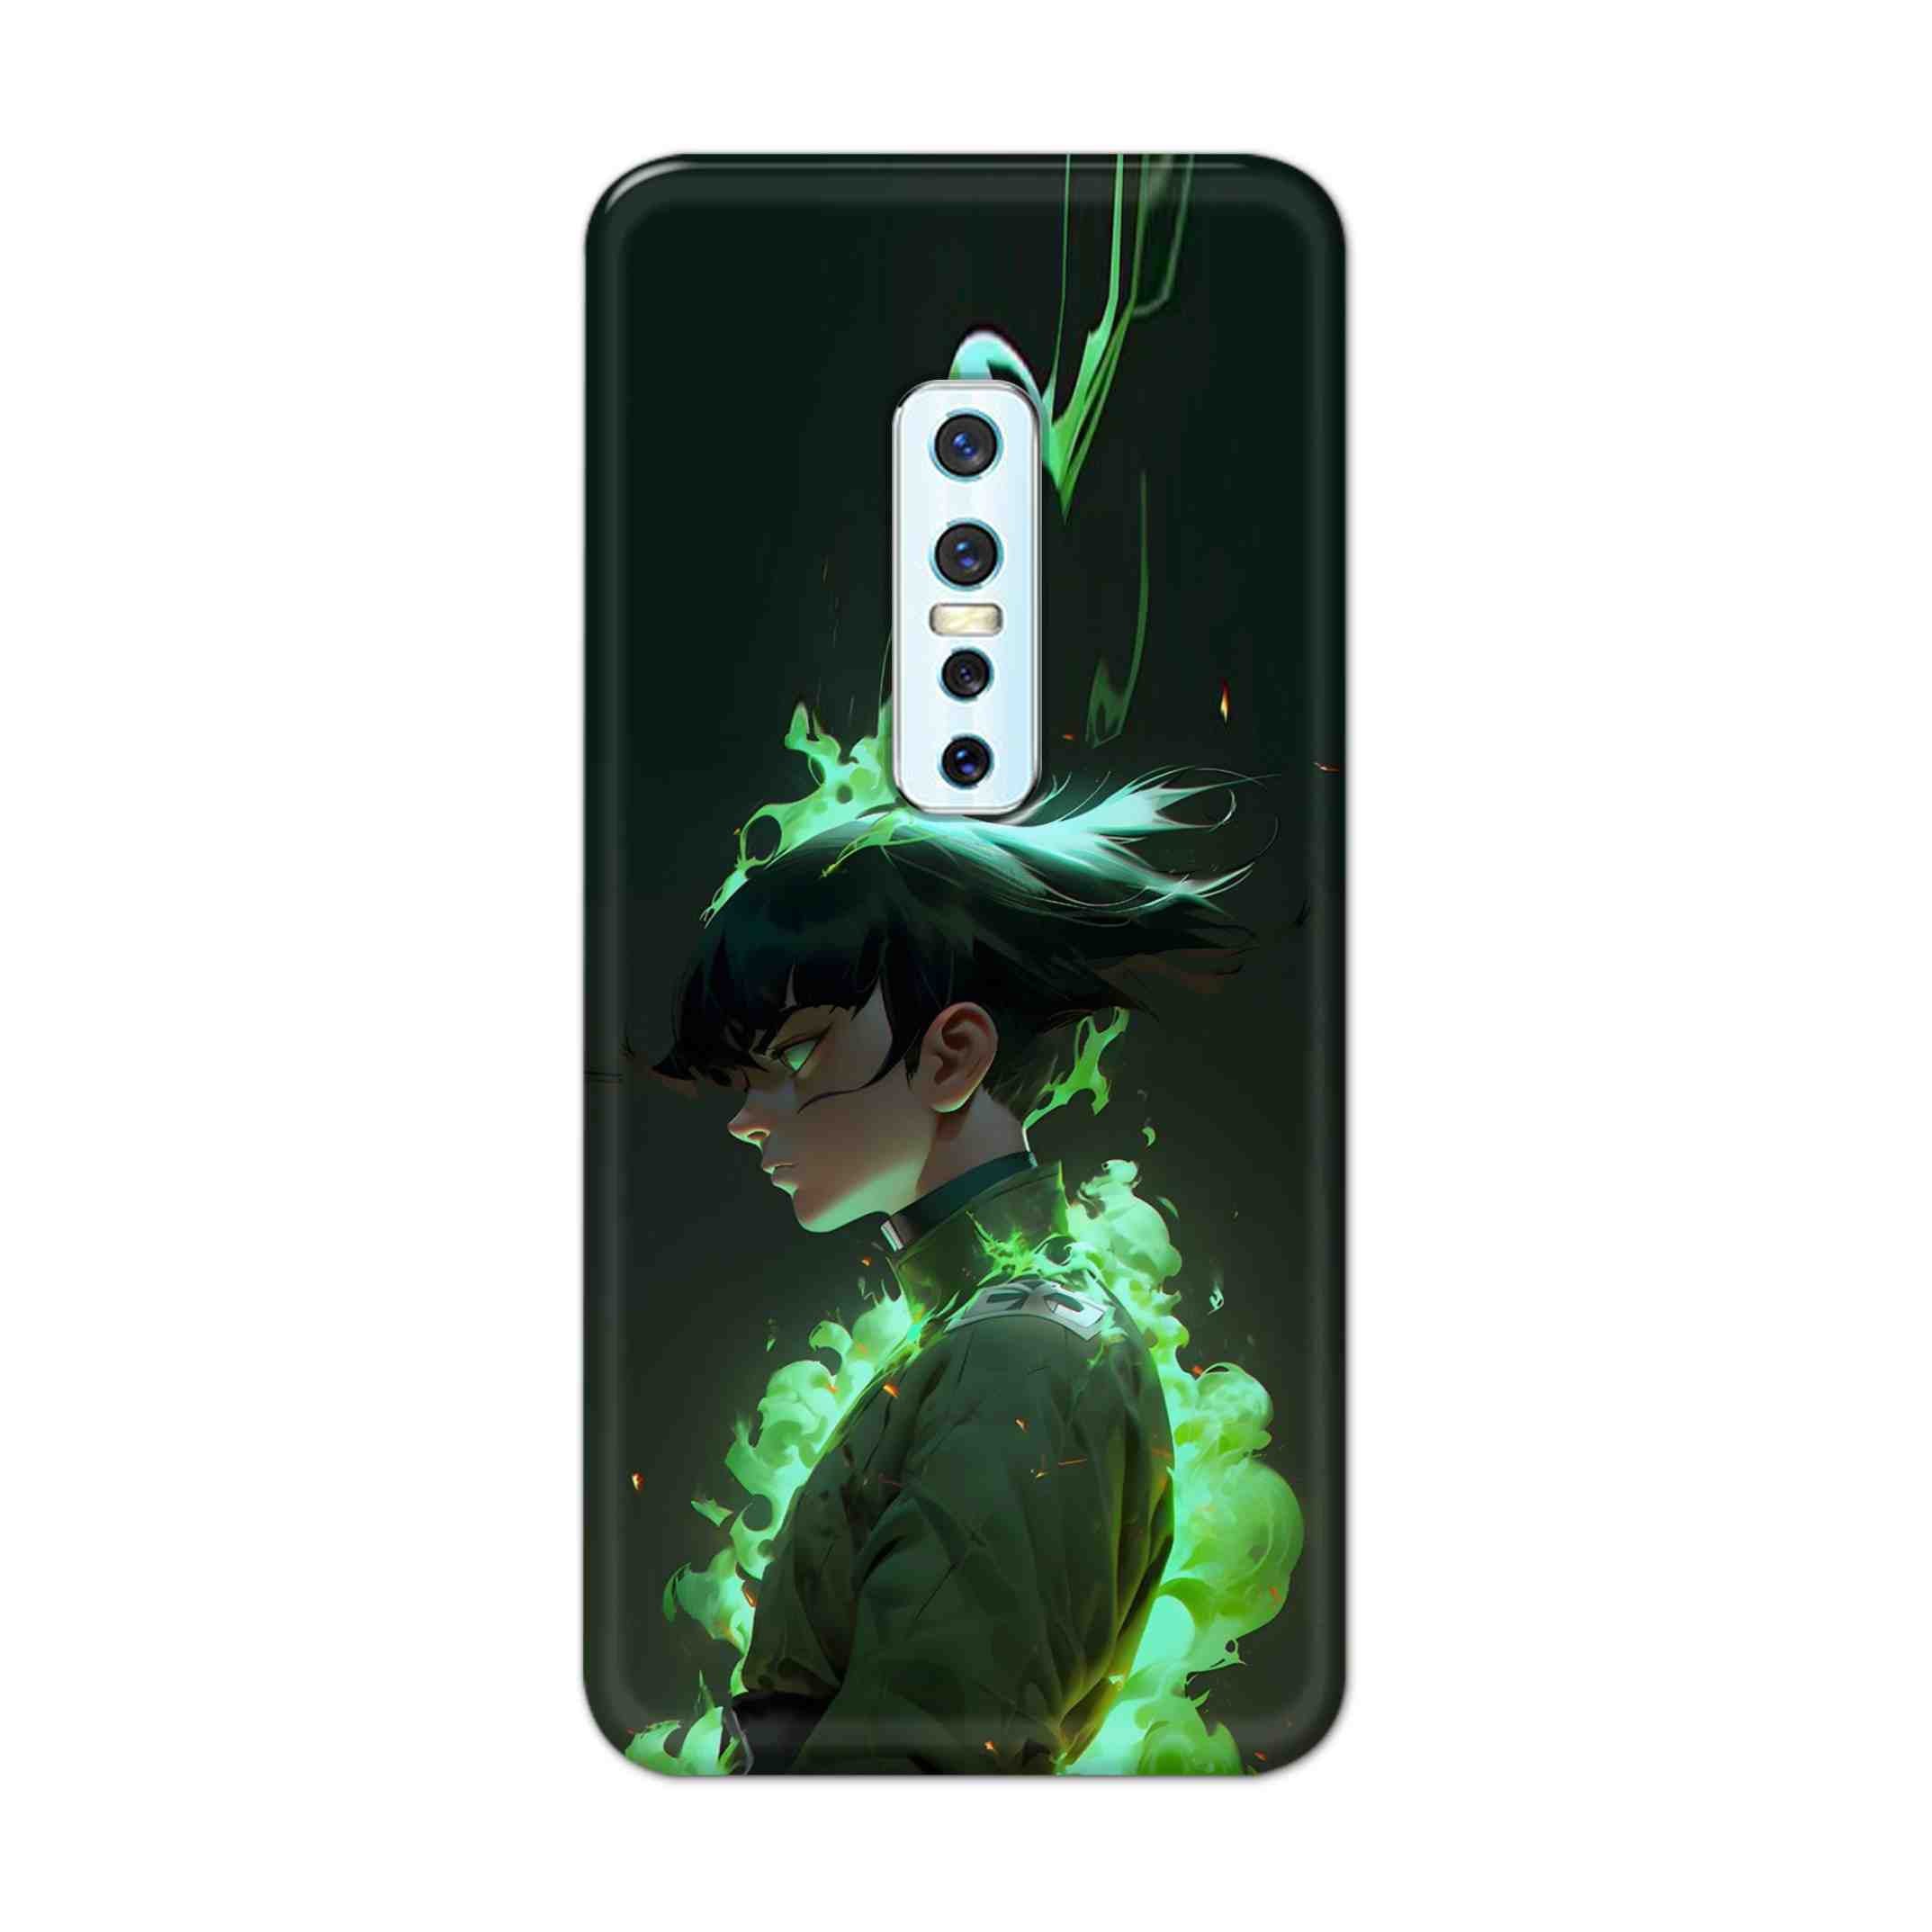 Buy Akira Hard Back Mobile Phone Case Cover For Vivo V17 Pro Online